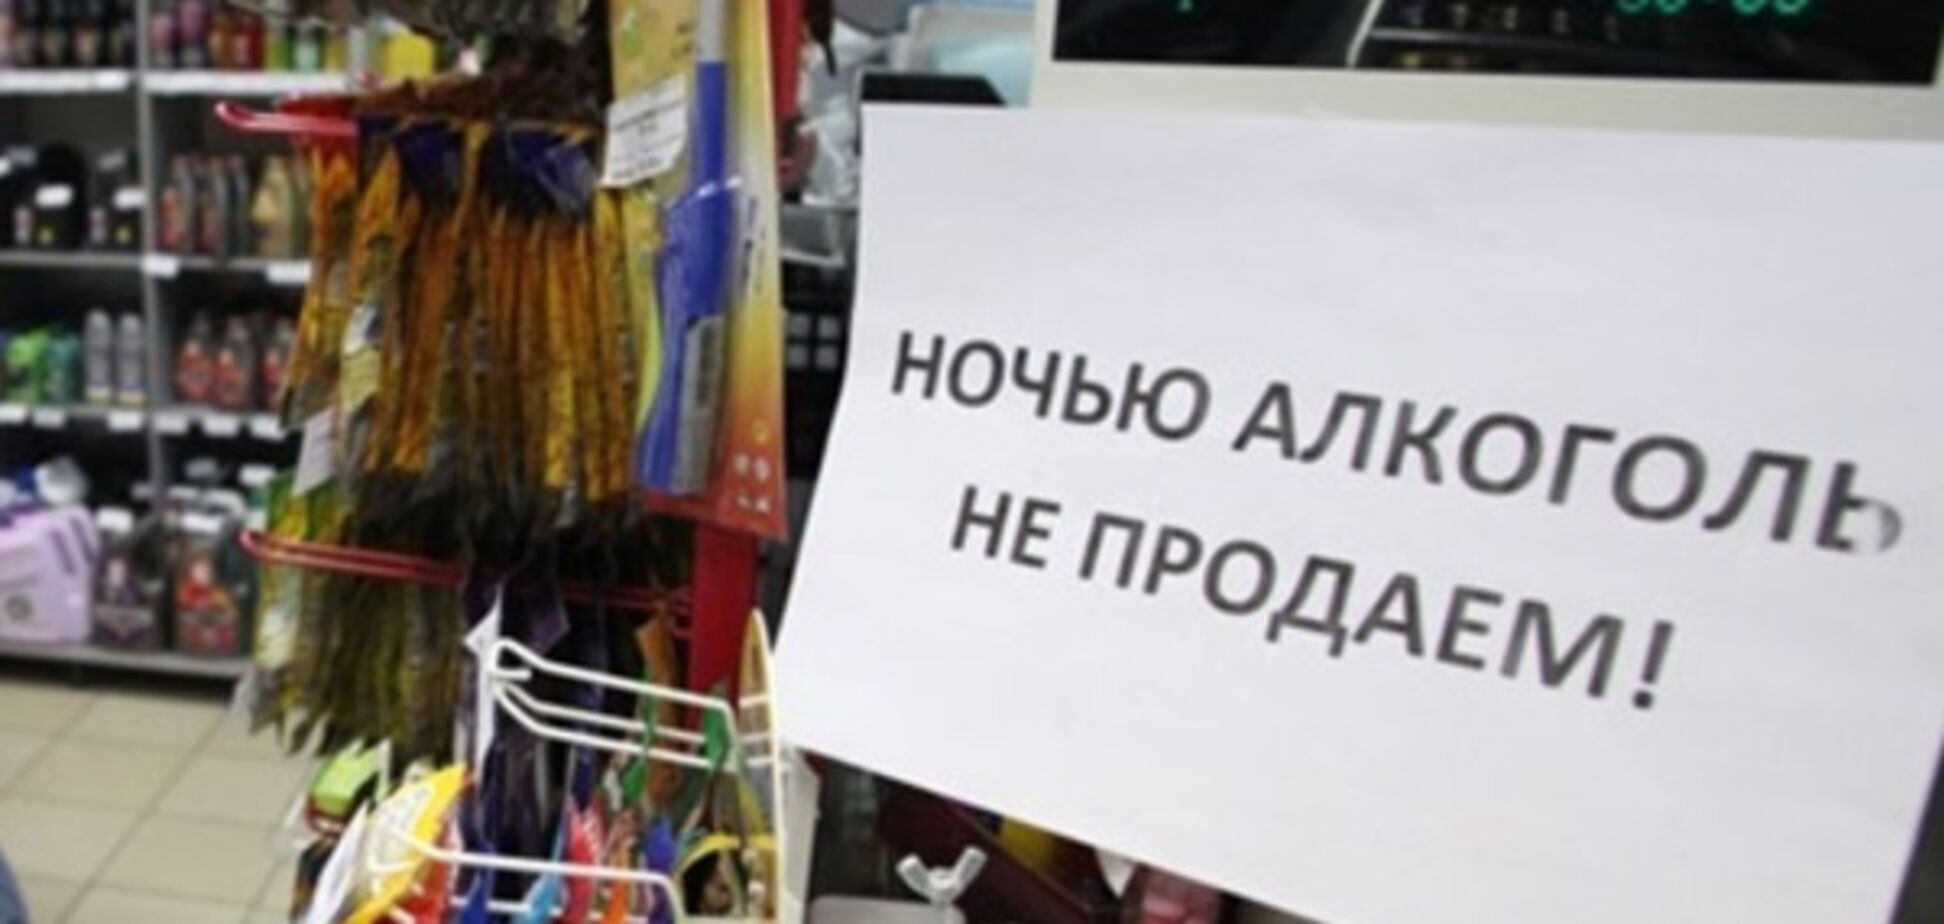 Продажа алкоголя в Киеве